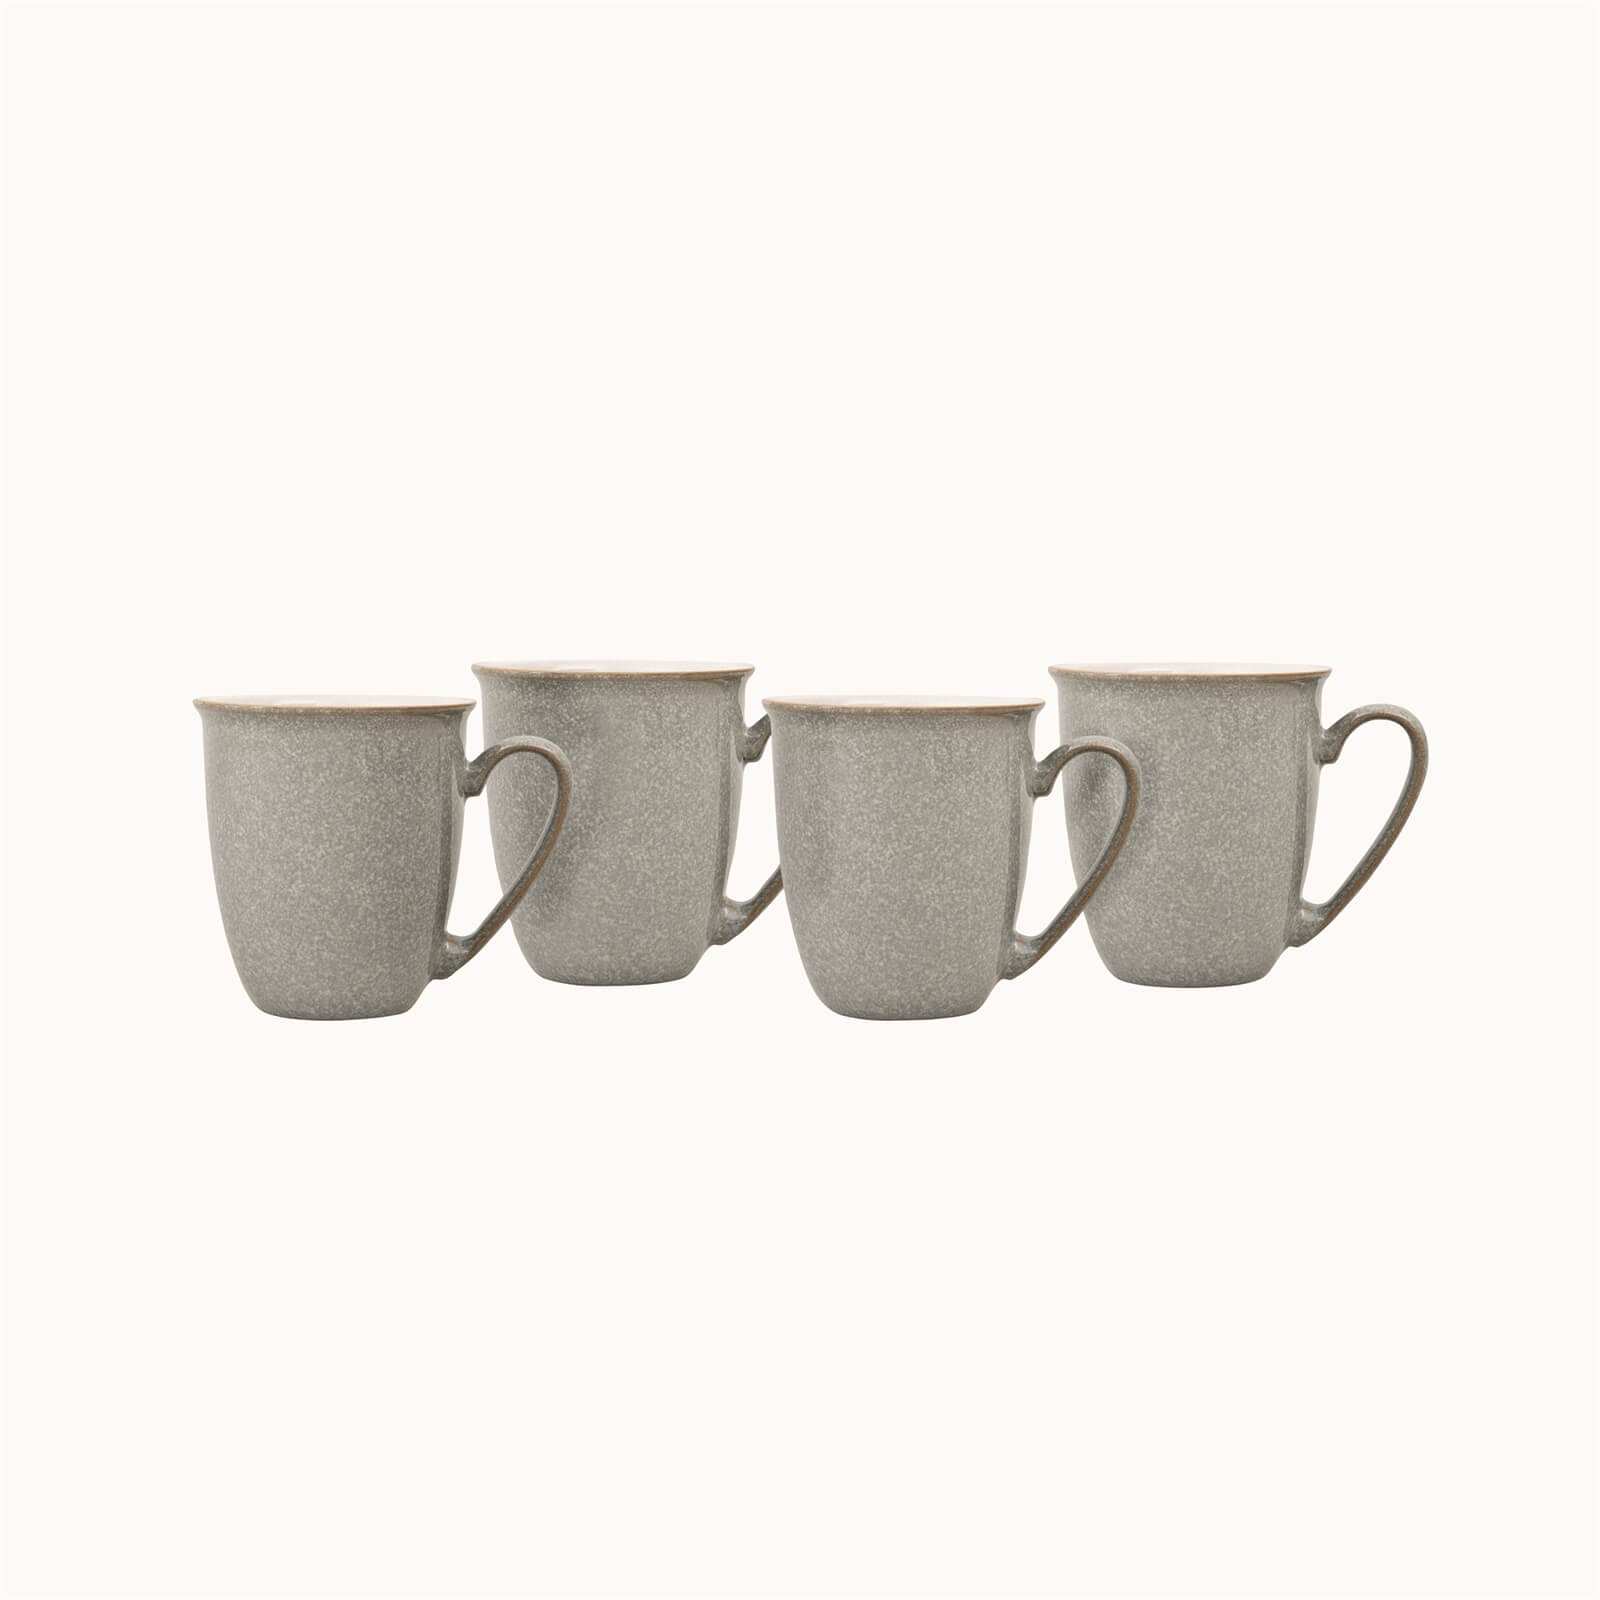 Elements 4 Piece Mug Set - Light Grey